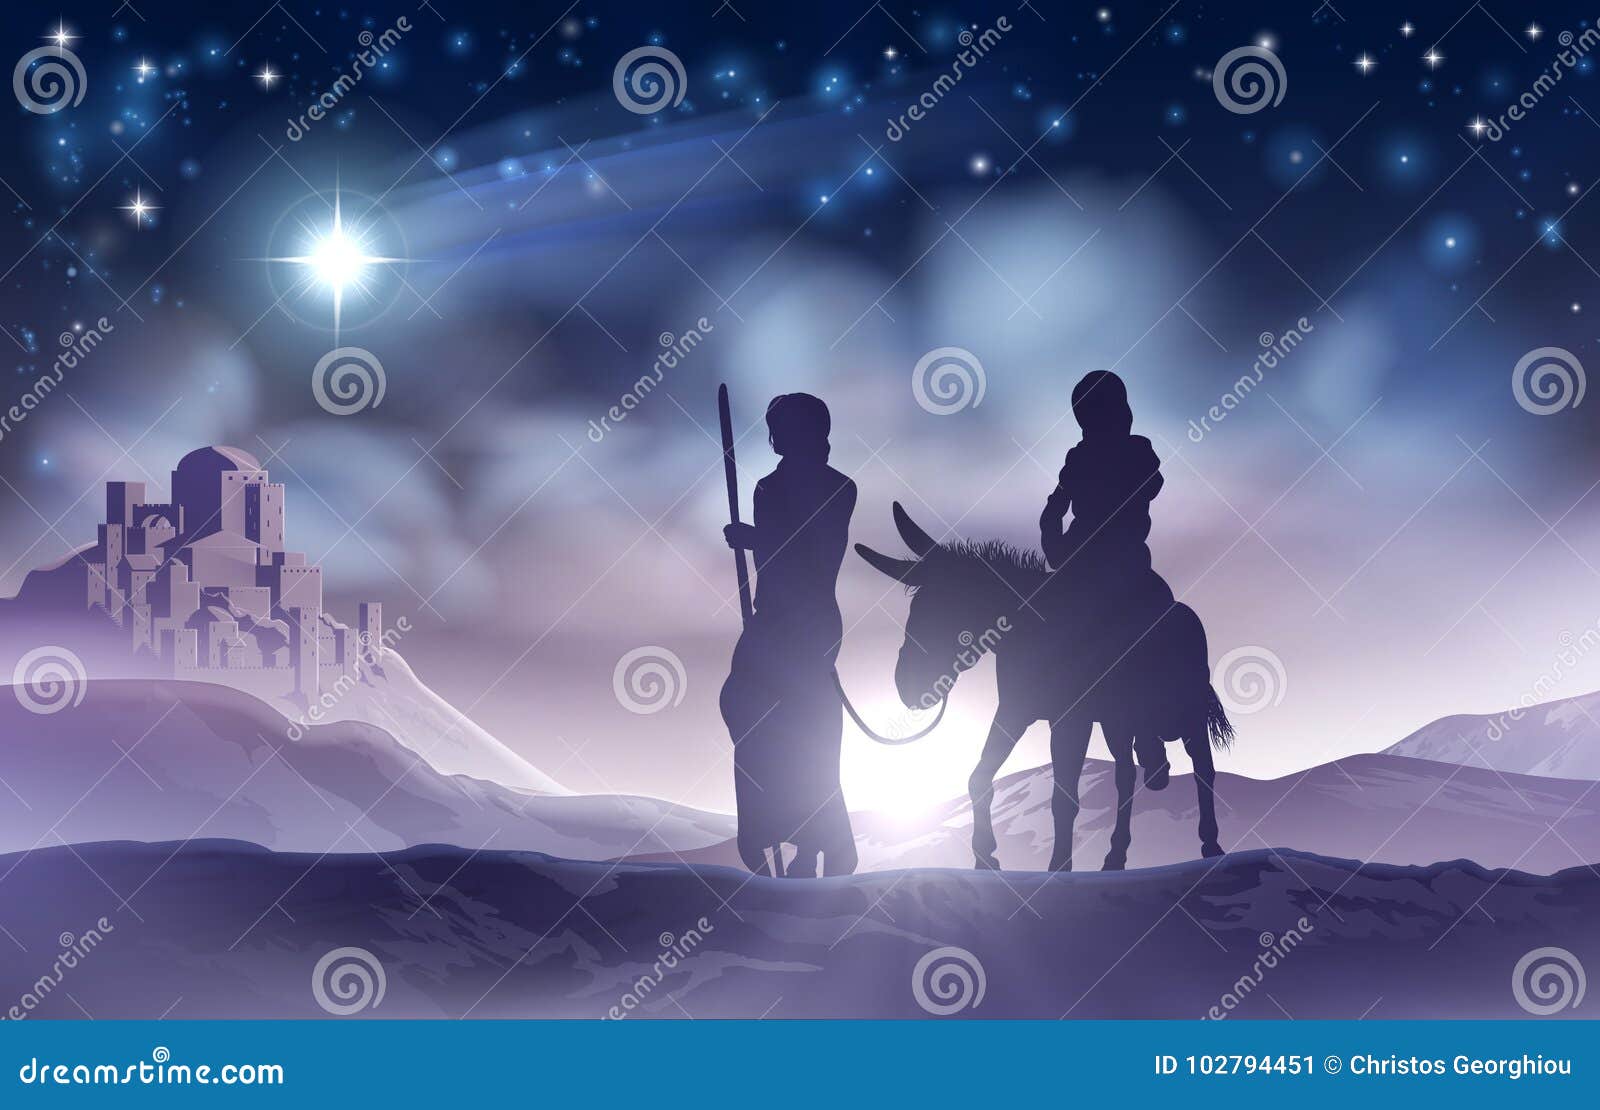 nativity christmas  mary and joseph